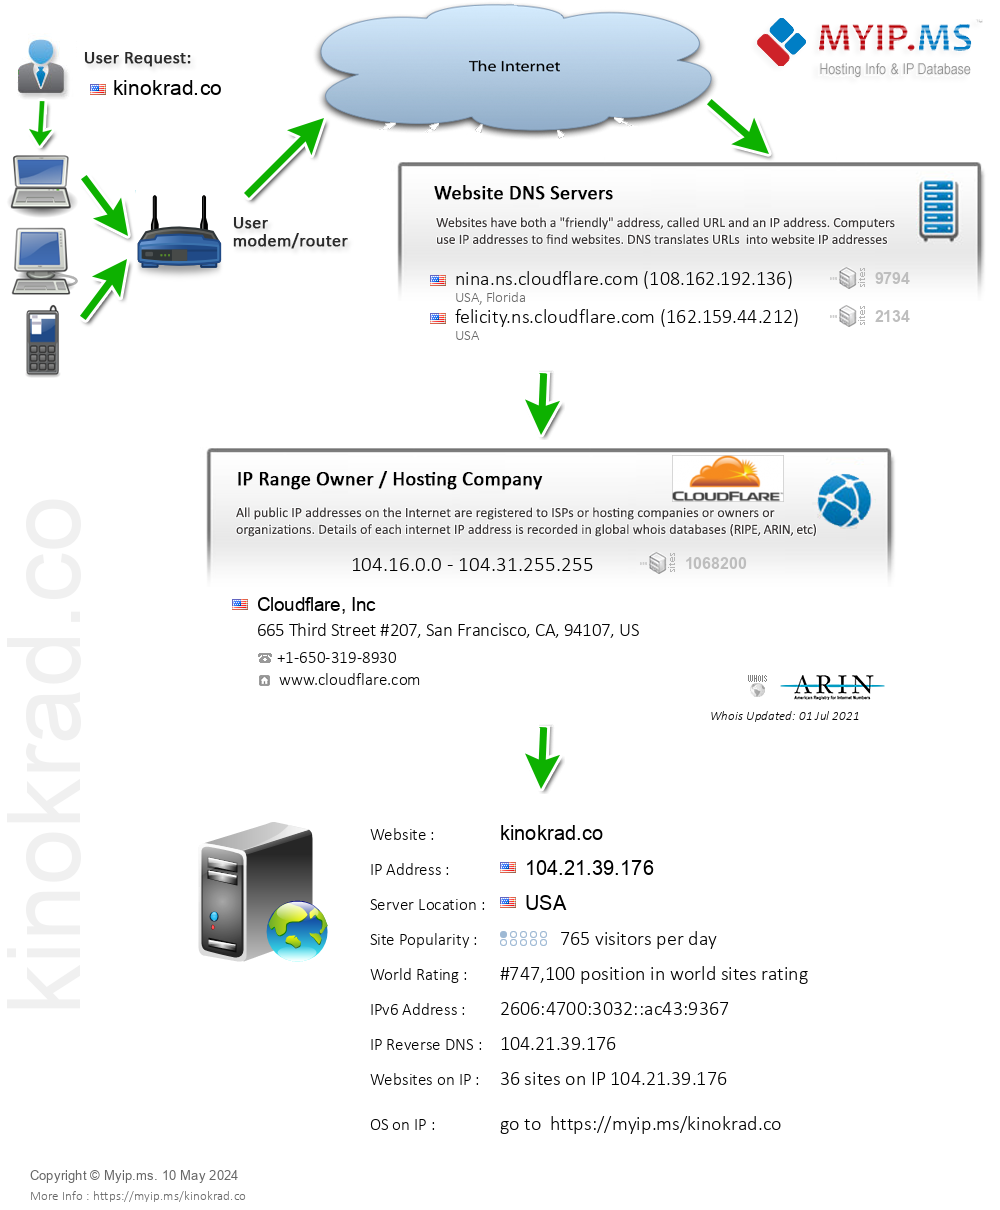 Kinokrad.co - Website Hosting Visual IP Diagram